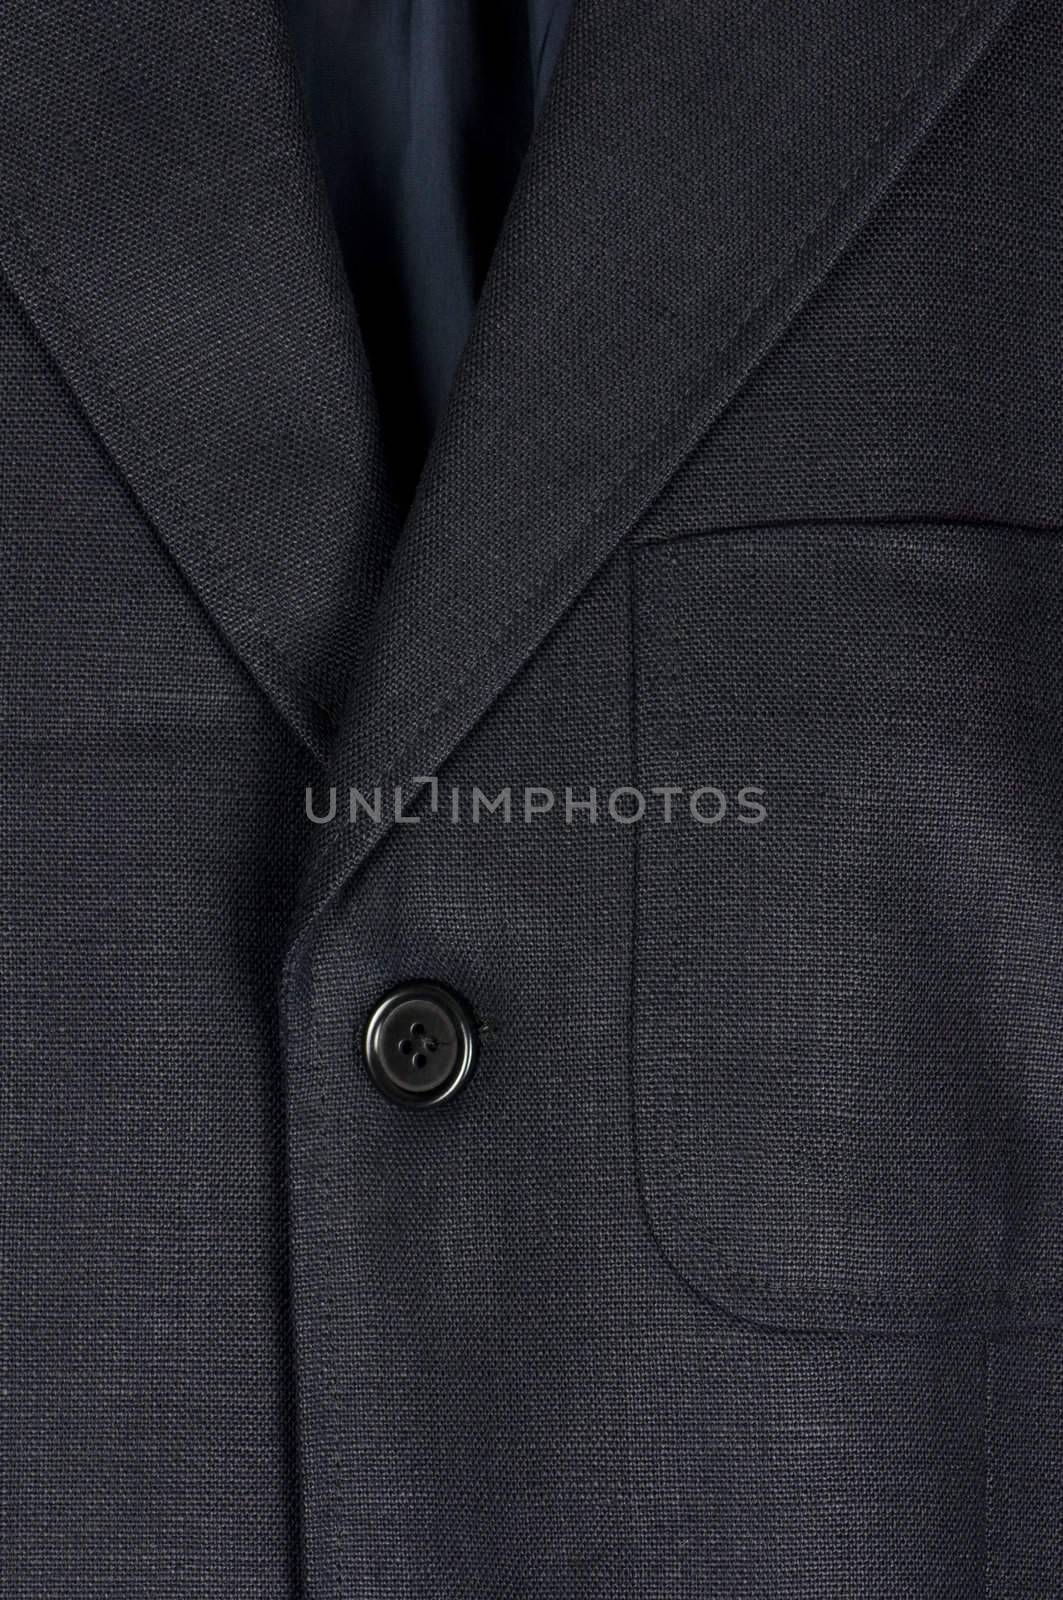 Linen jacket detail, male fashion